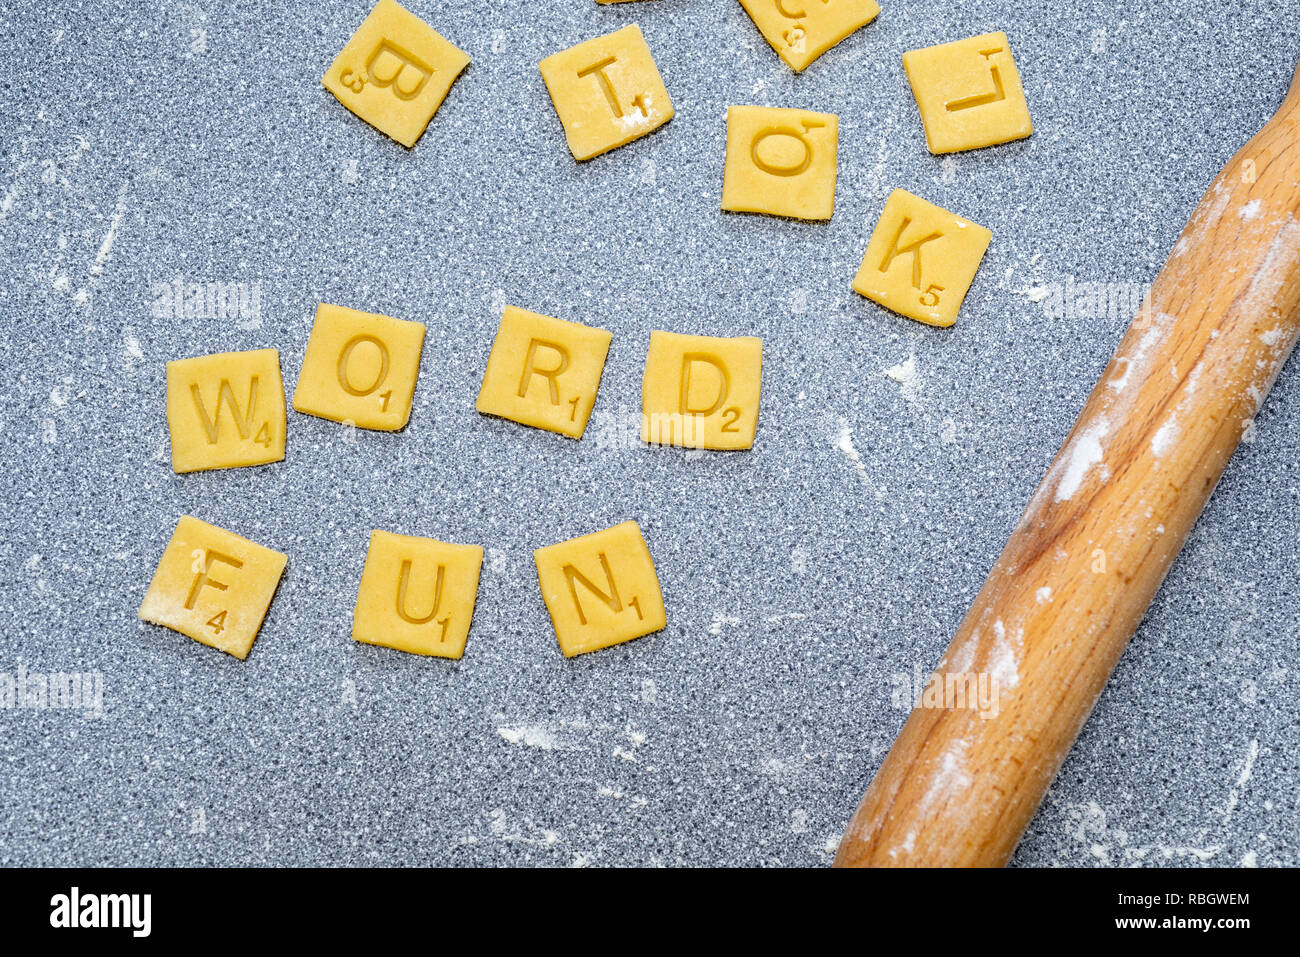 Wort Spaß - scrabble Worte von Keks/Plätzchenteig. Stockfoto